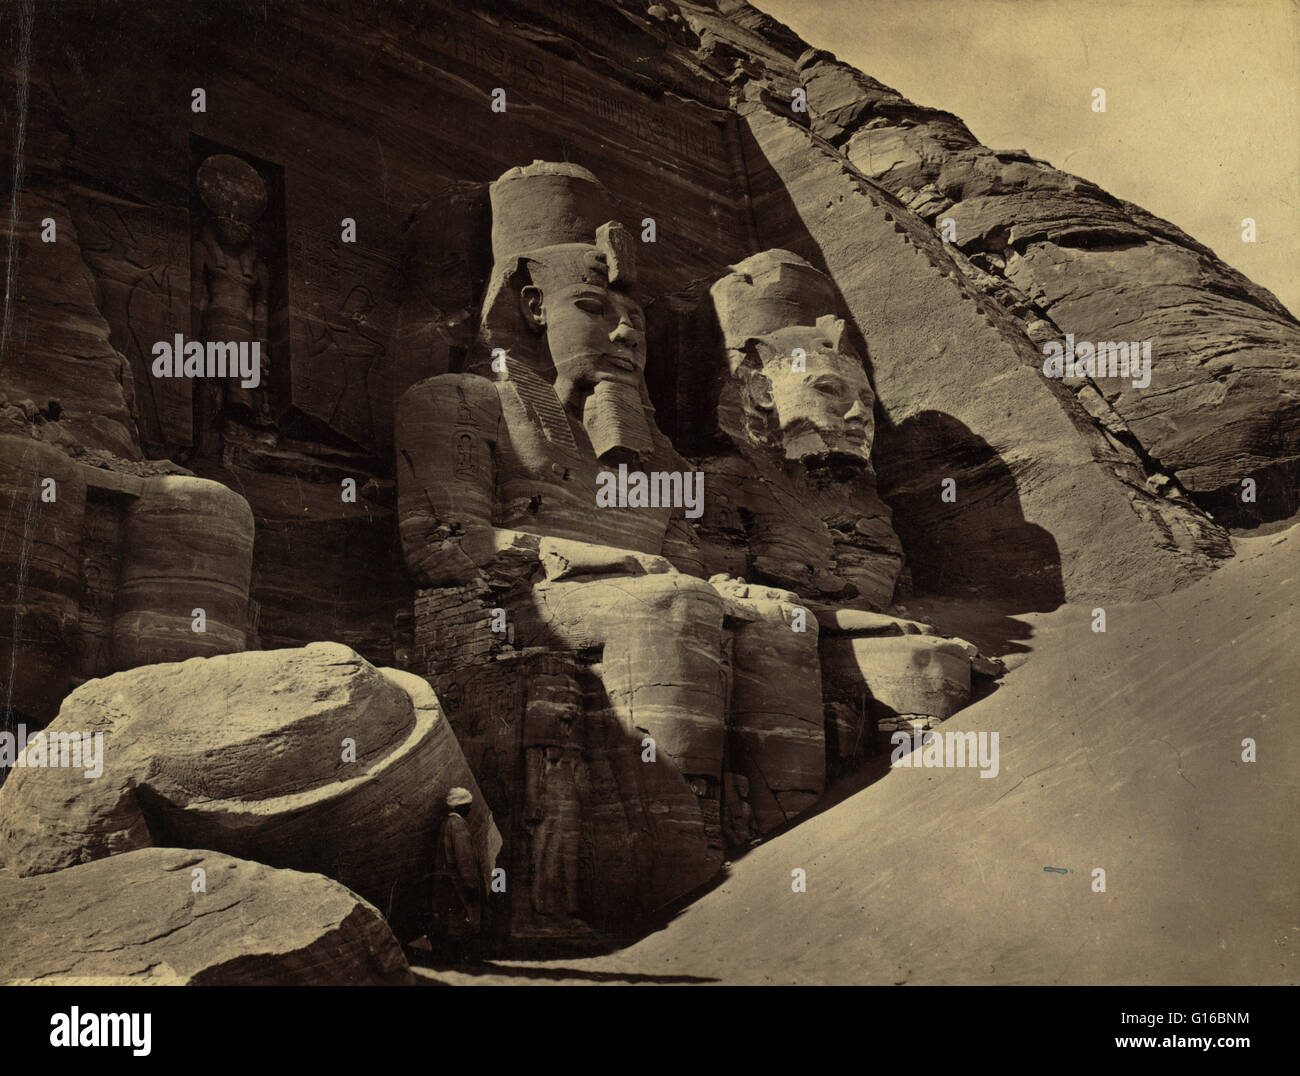 Intitulé : "Abou Simbel". Les temples d'Abou Simbel sont deux temples de roche massive à Abou Simbel en Nubie, dans le sud de l'Égypte. Les deux temples ont été sculptées dans la montagne pendant le règne du Pharaon Ramsès II au 13ème siècle avant notre ère. Construire Banque D'Images